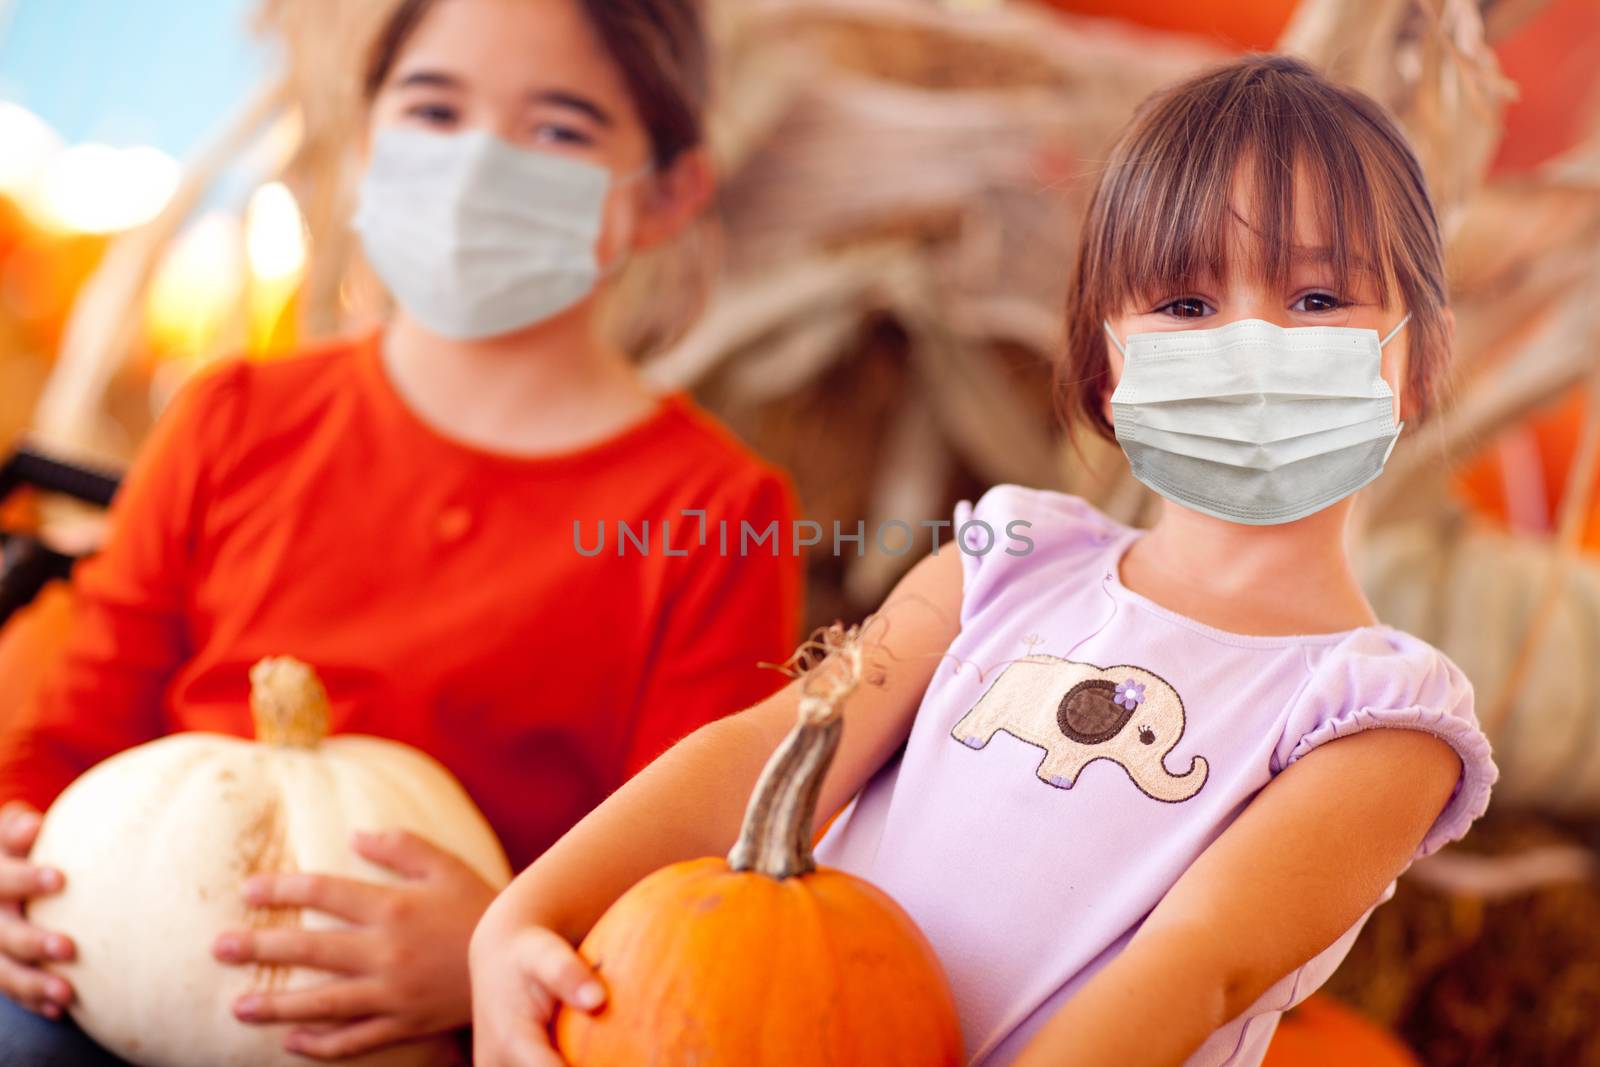 Cute Little Girls Holding Their Pumpkins At A Pumpkin Patch Wearing Medical Face Masks.